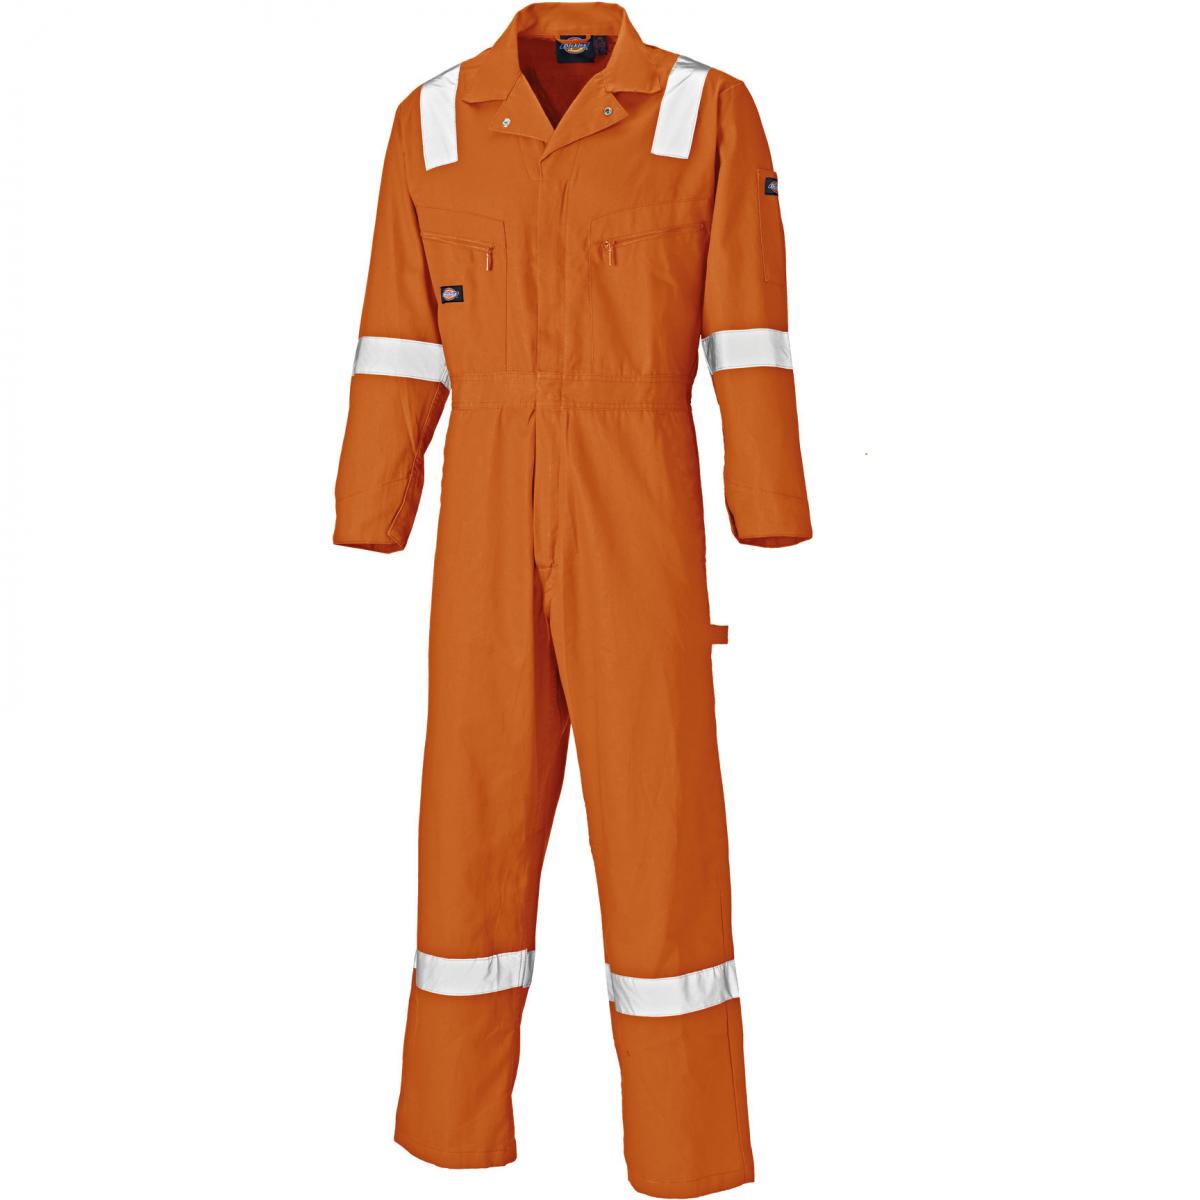 Hersteller: Dickies Herstellernummer: WD2279LW Artikelbezeichnung: Leichter Baumwoll-Overall mit Reflexeinsätze Farbe: Orange